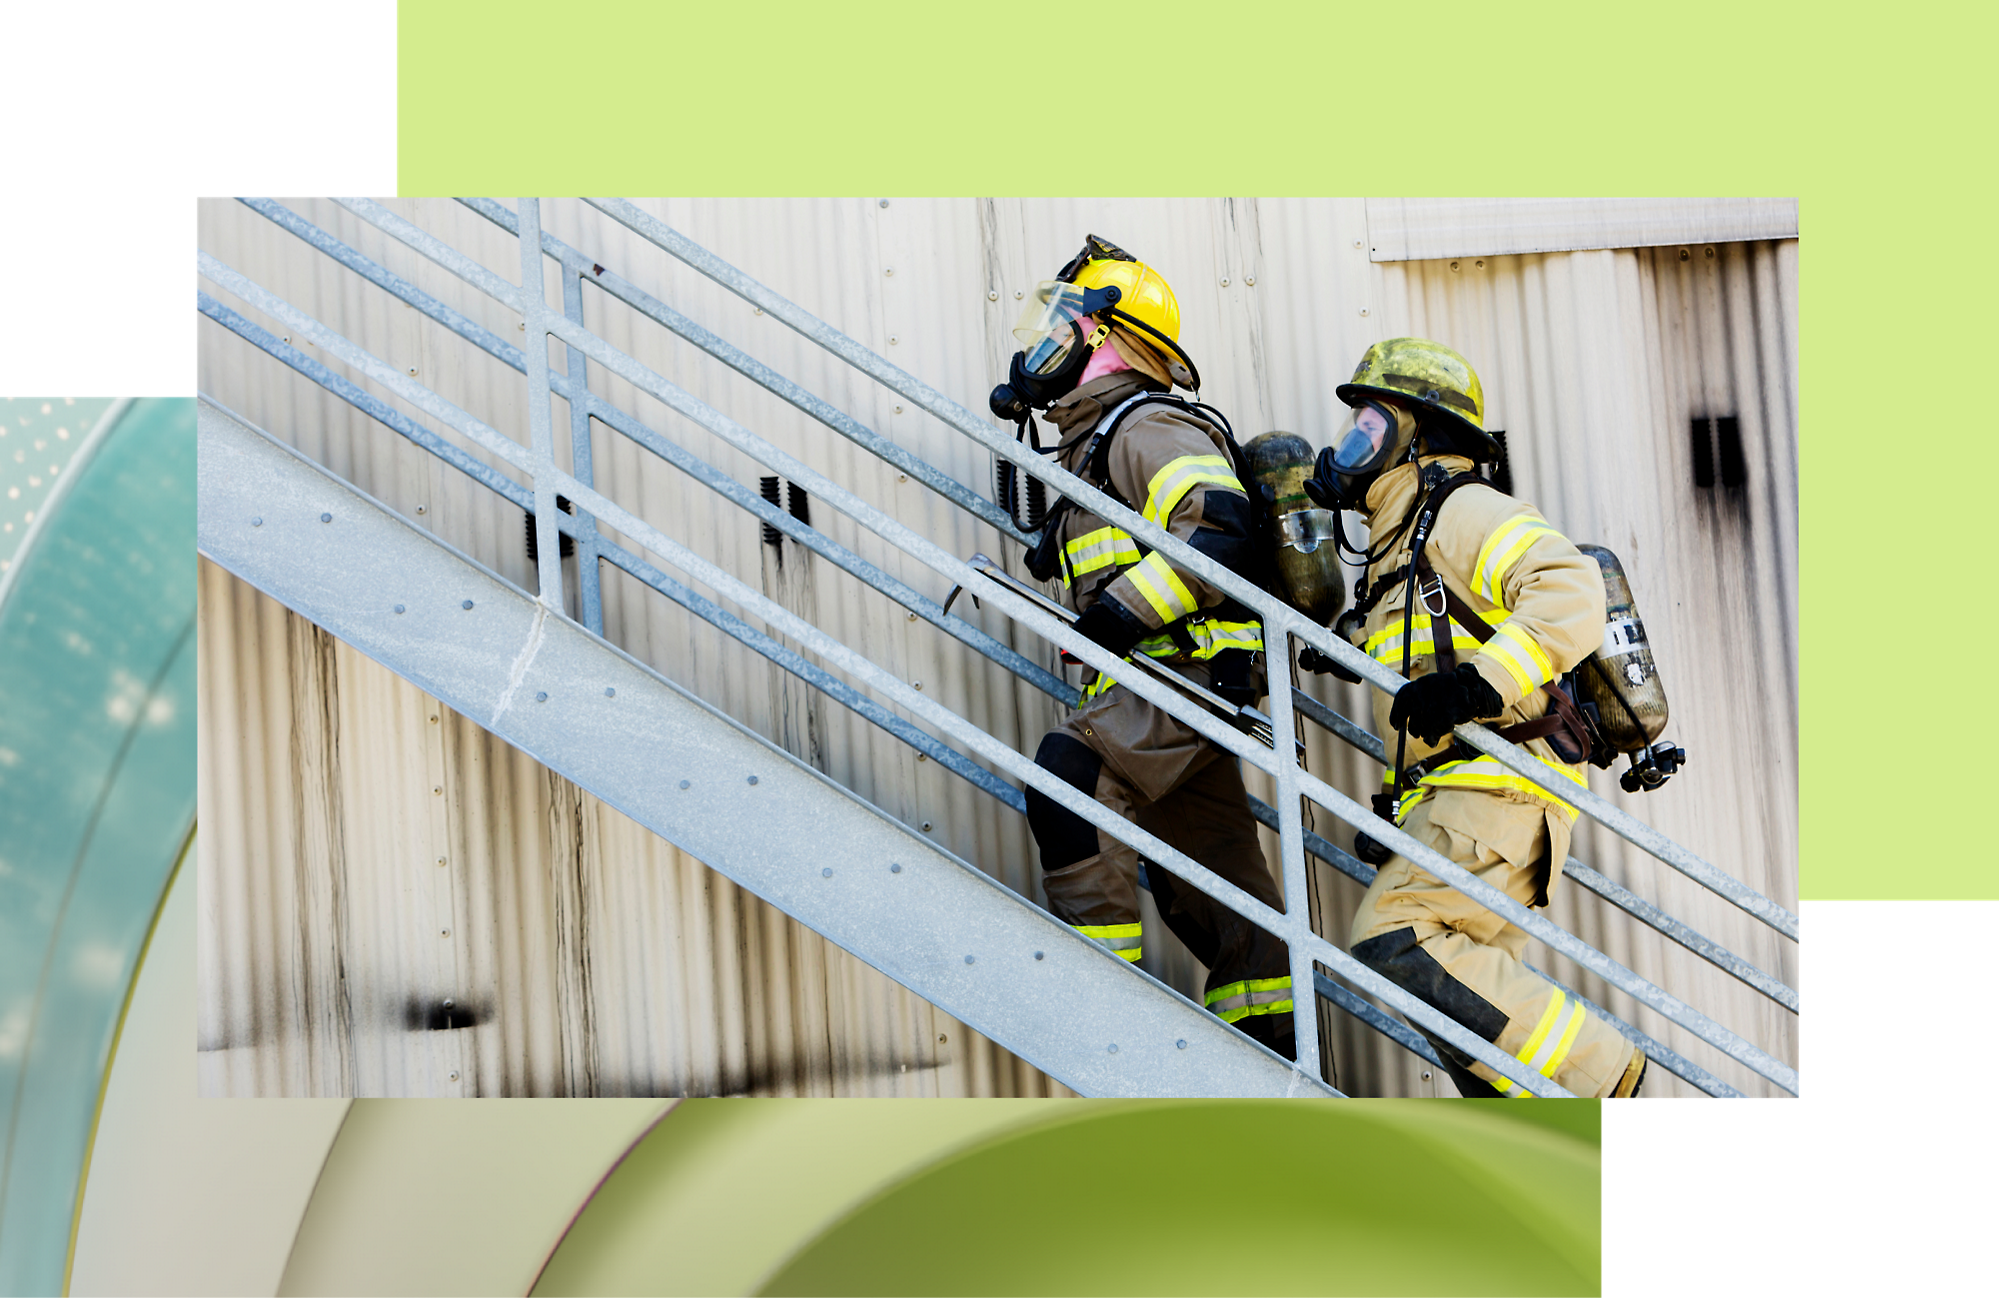 Двое пожарных в полном снаряжении поднимаются по наружной металлической лестнице во время учений по реагированию на чрезвычайные ситуации.